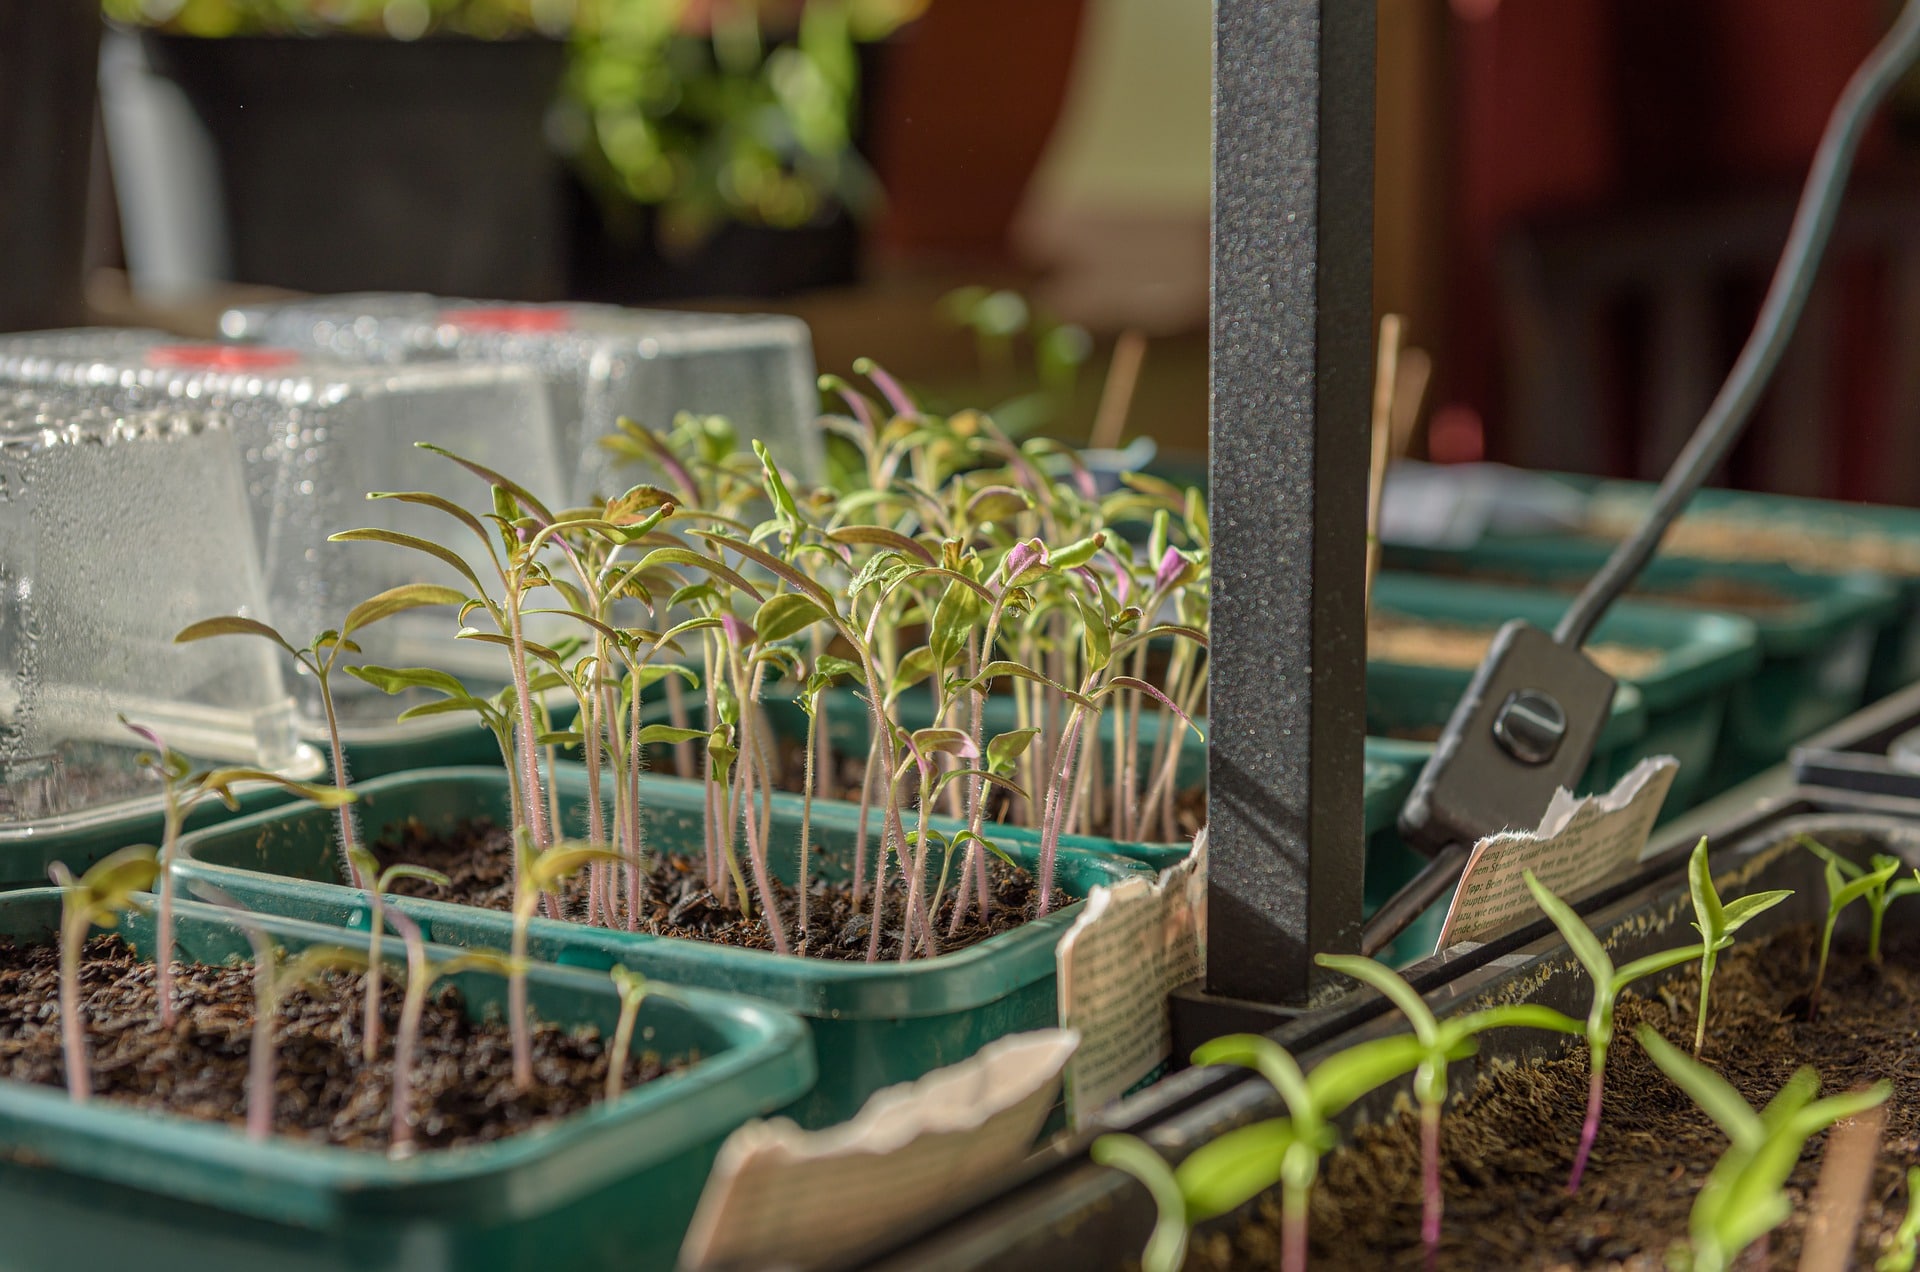 How to Keep Plants Warm Inside a Mini Greenhouse